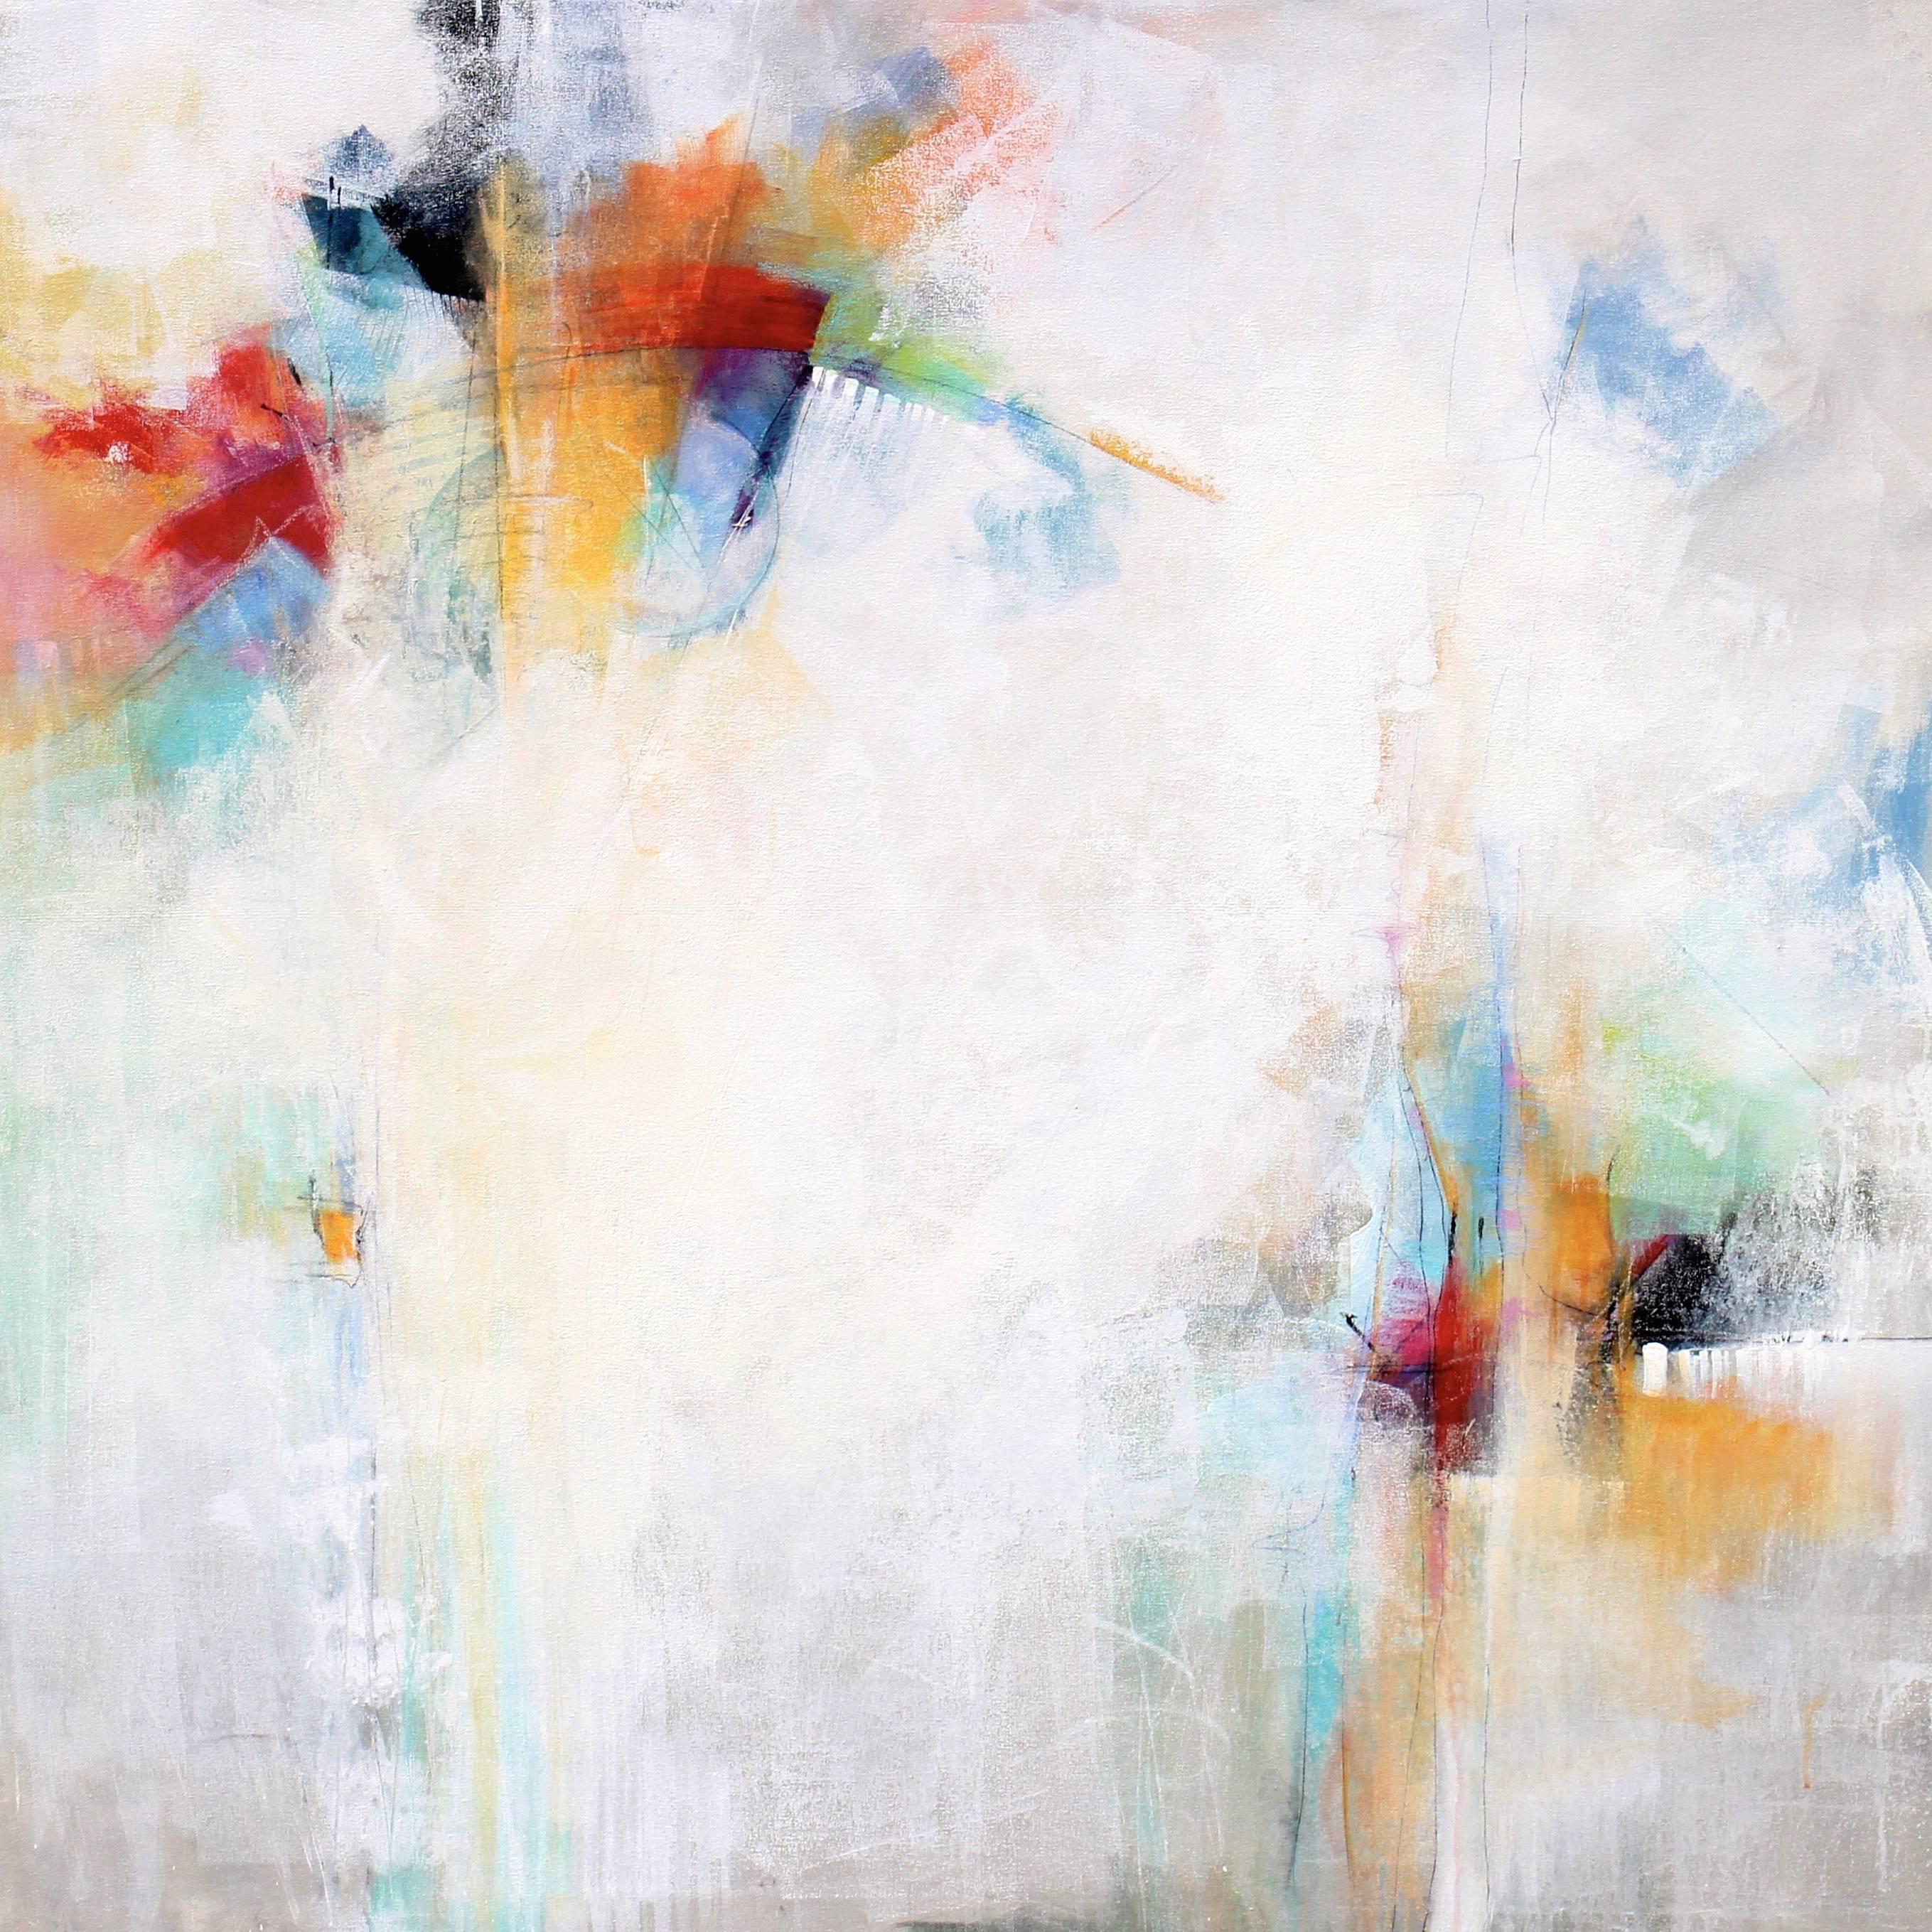 Karen Hale Abstract Painting - Joyful, Mixed Media on Canvas